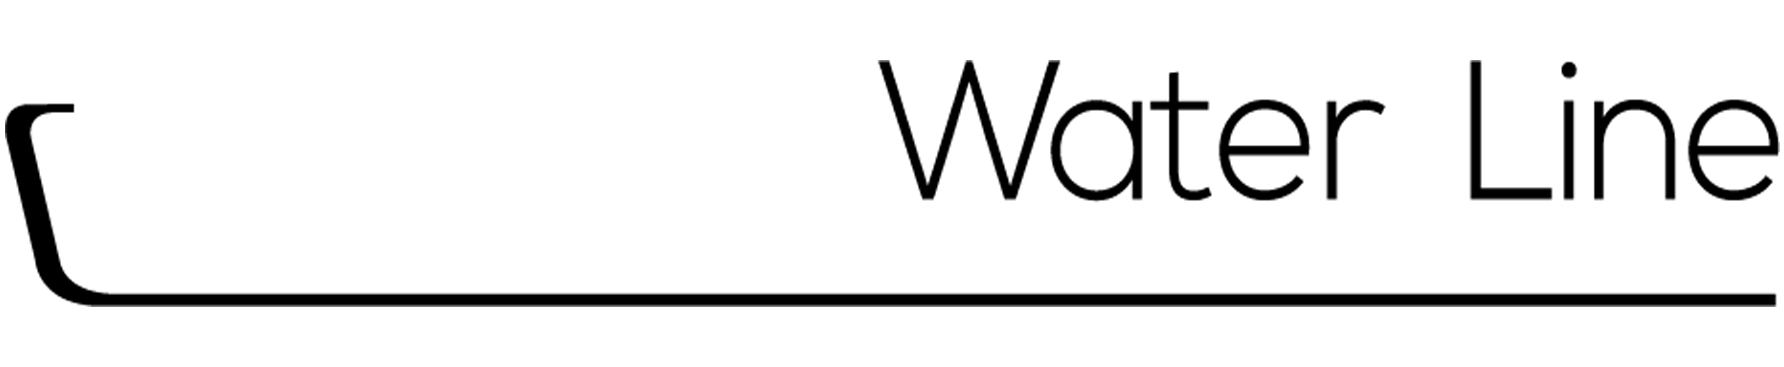 Dosatron WaterLine logo